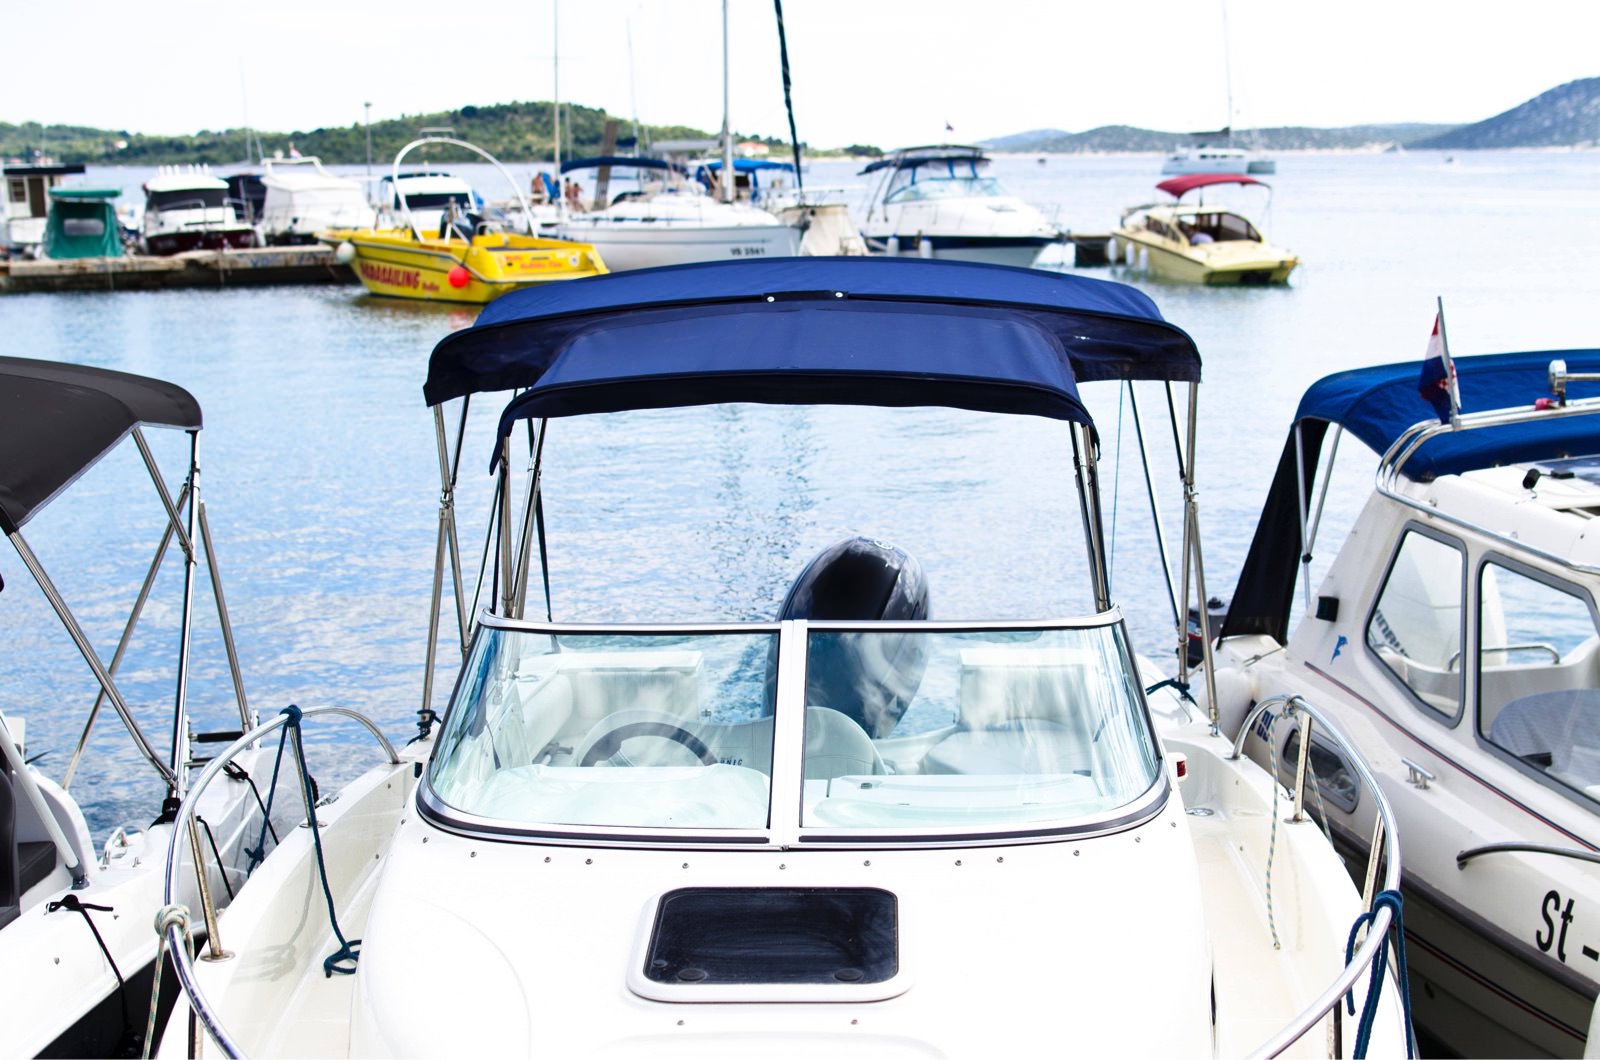 Polarizado de ventanas de embarcaciones para seguridad, privacidad y proteccion solar